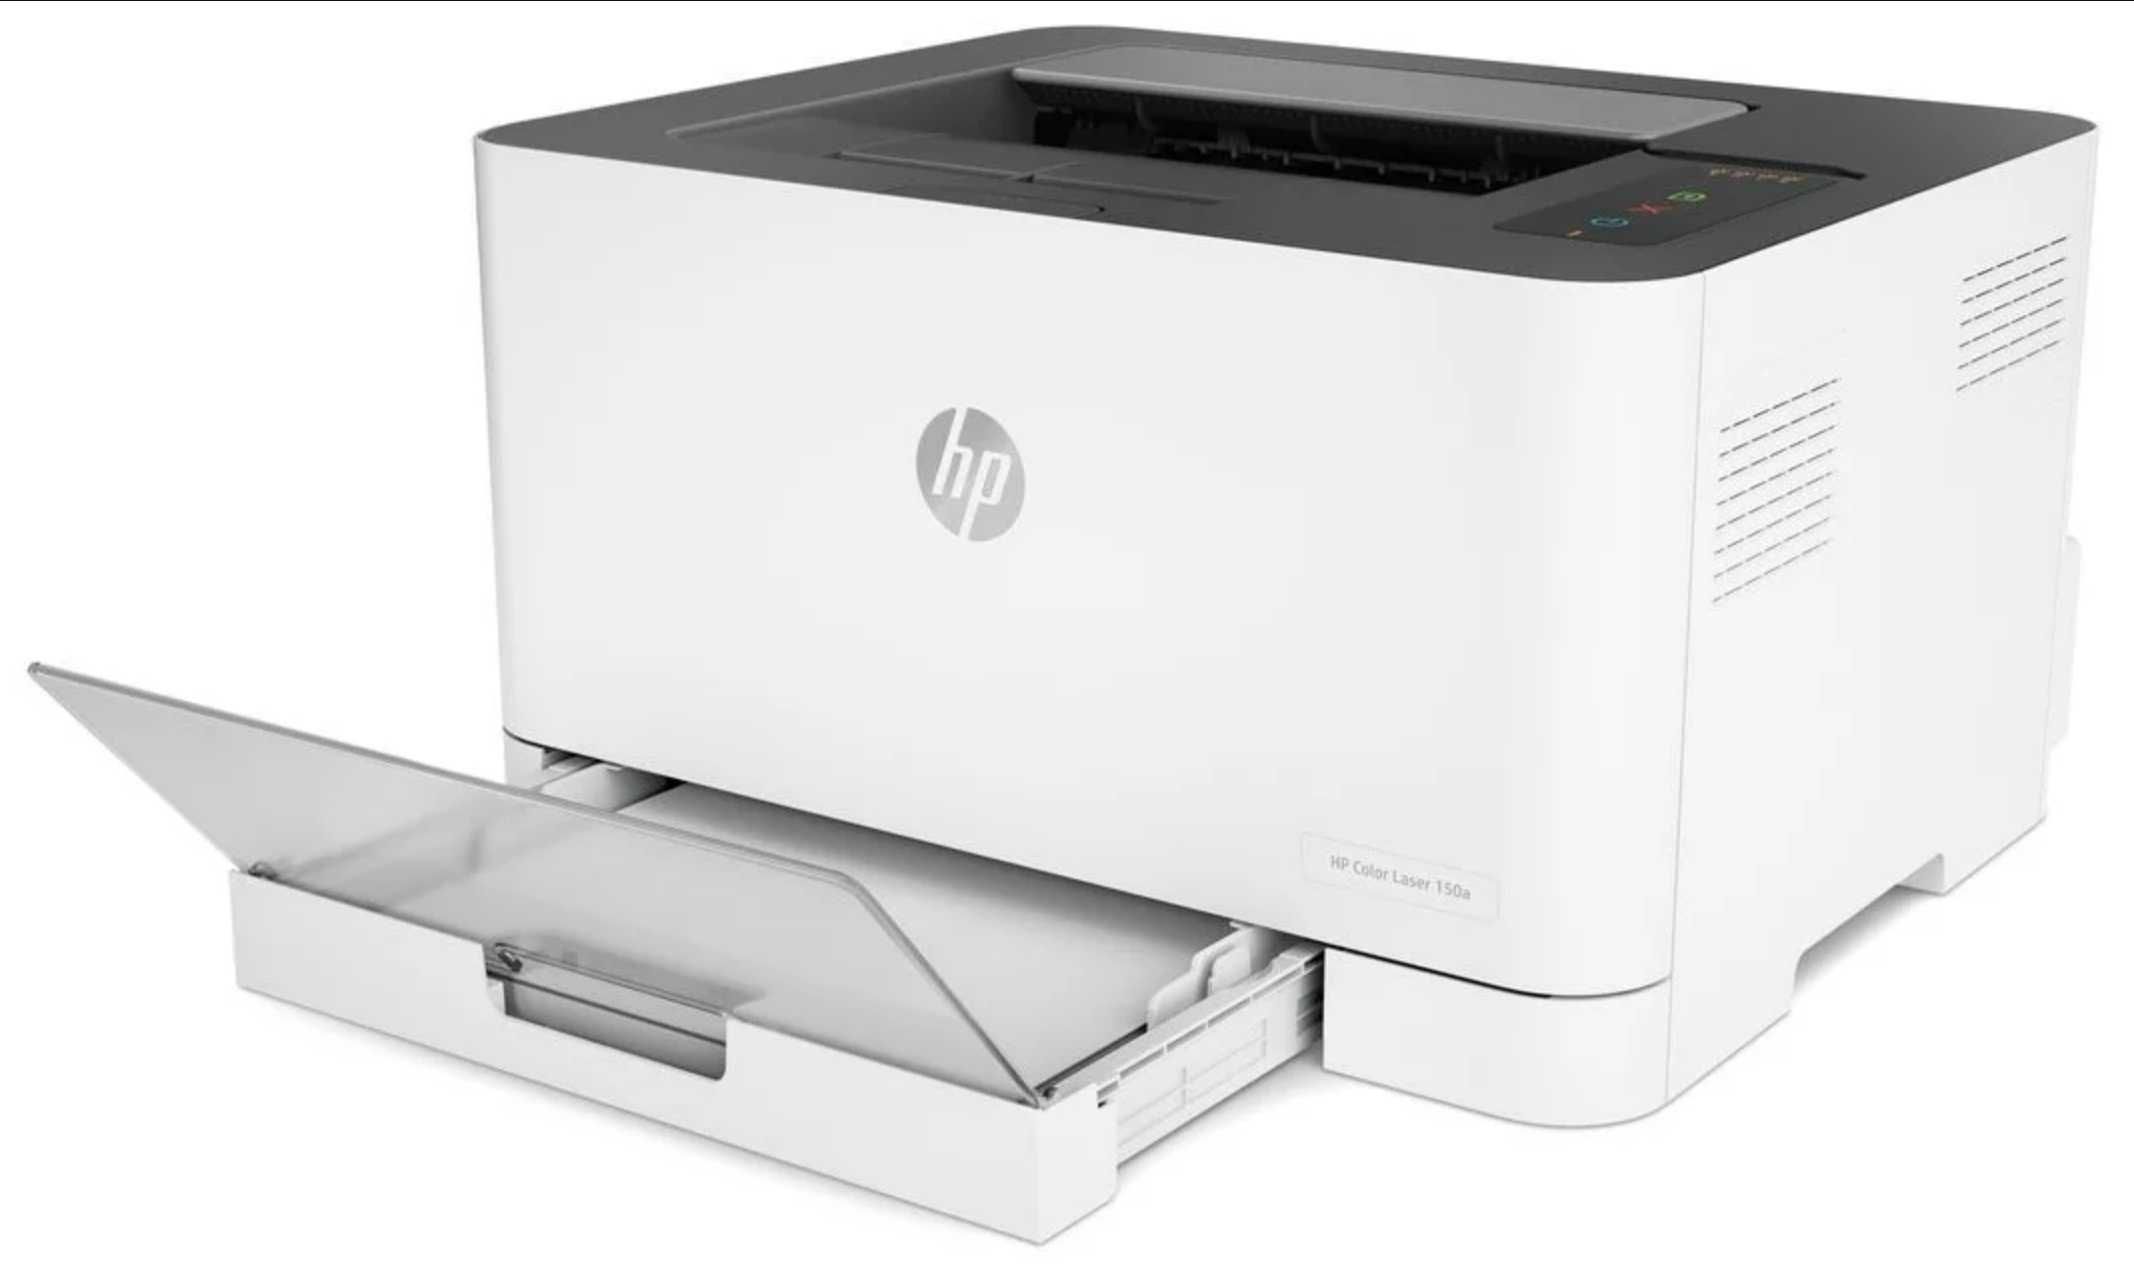 Цветной лазерный принтер A4 принтер HP. Доставка/Гарантия/Ф.О. любая